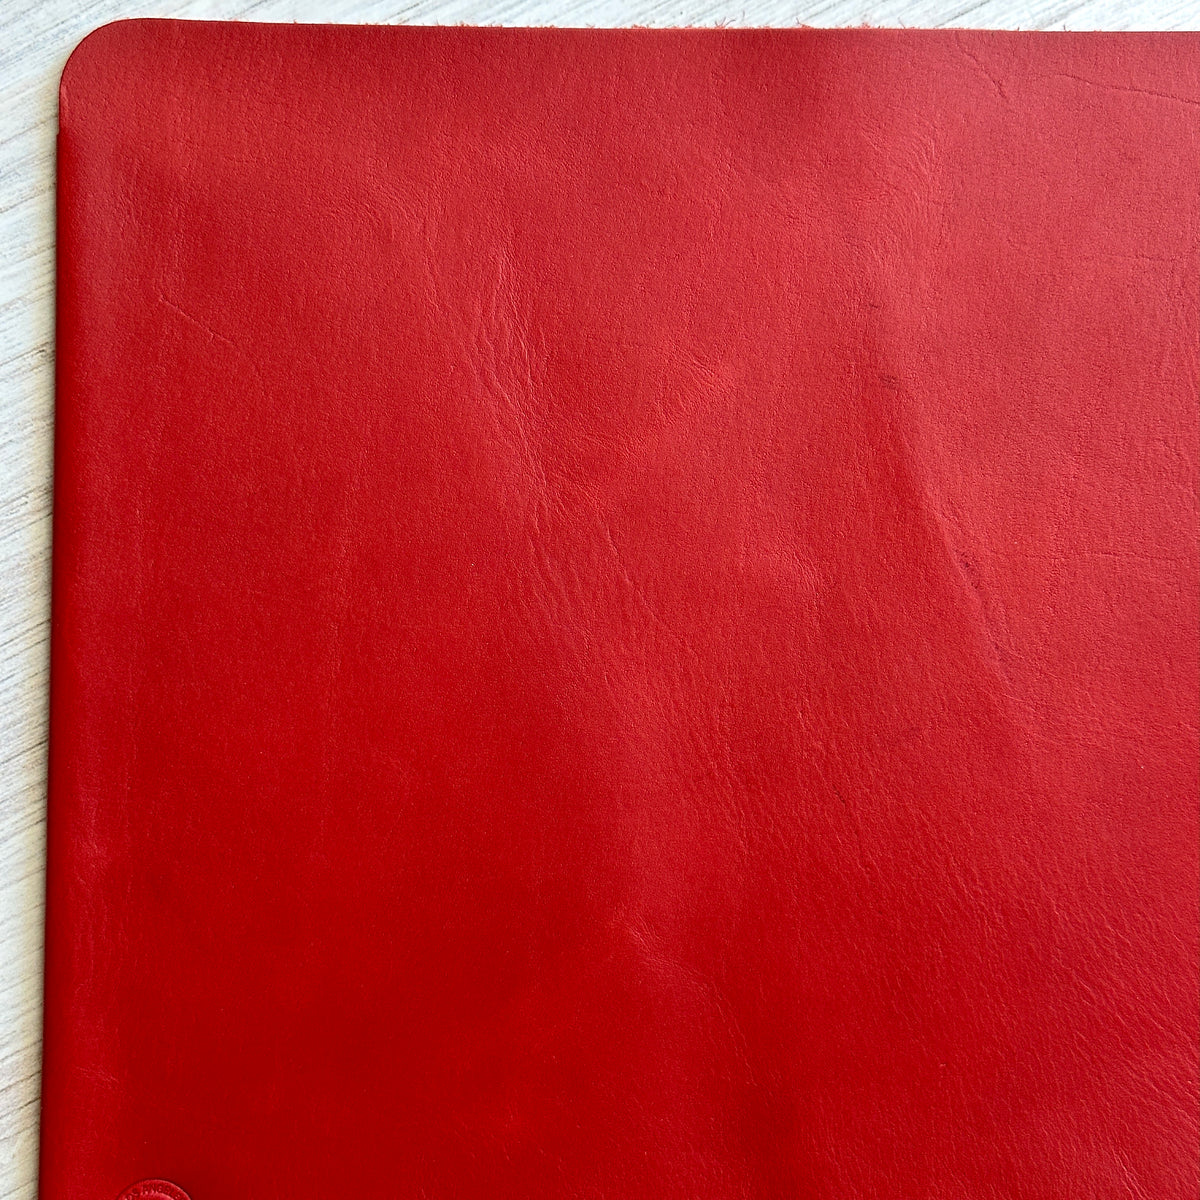 [BKx1.61] Portfolio Folder // Red (Regular)